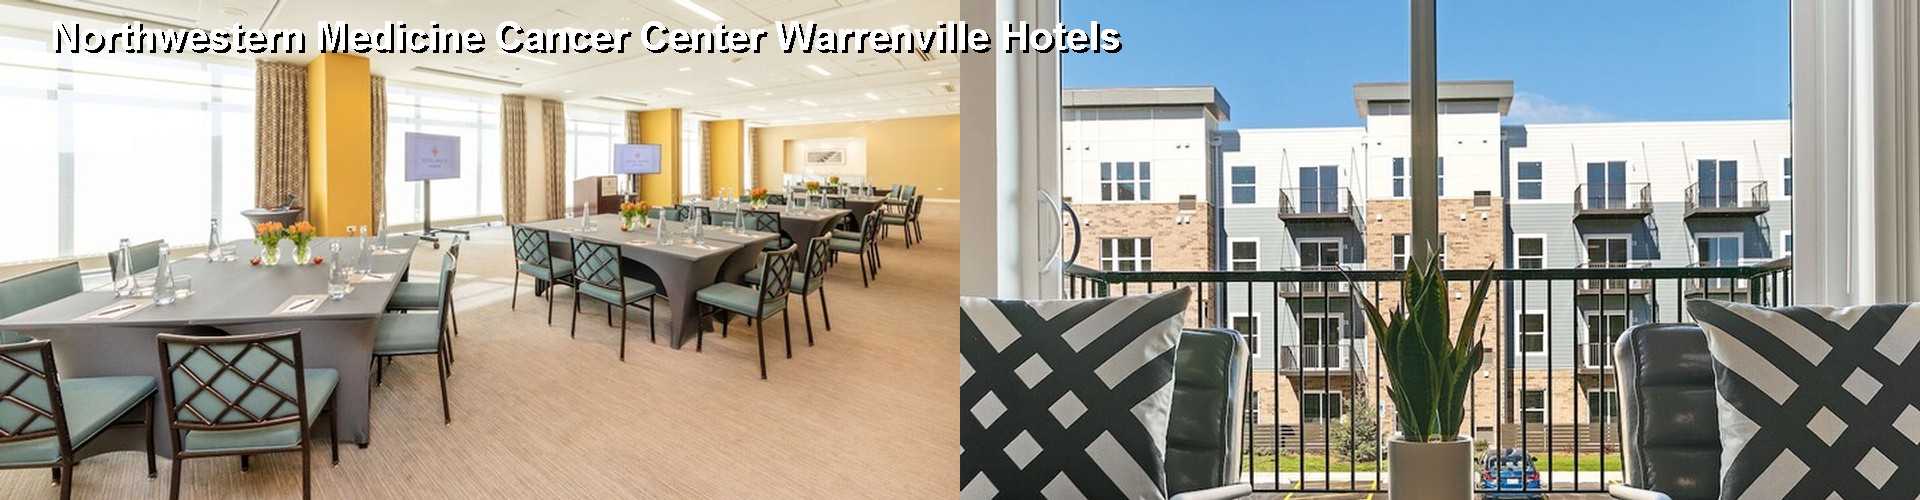 5 Best Hotels near Northwestern Medicine Cancer Center Warrenville